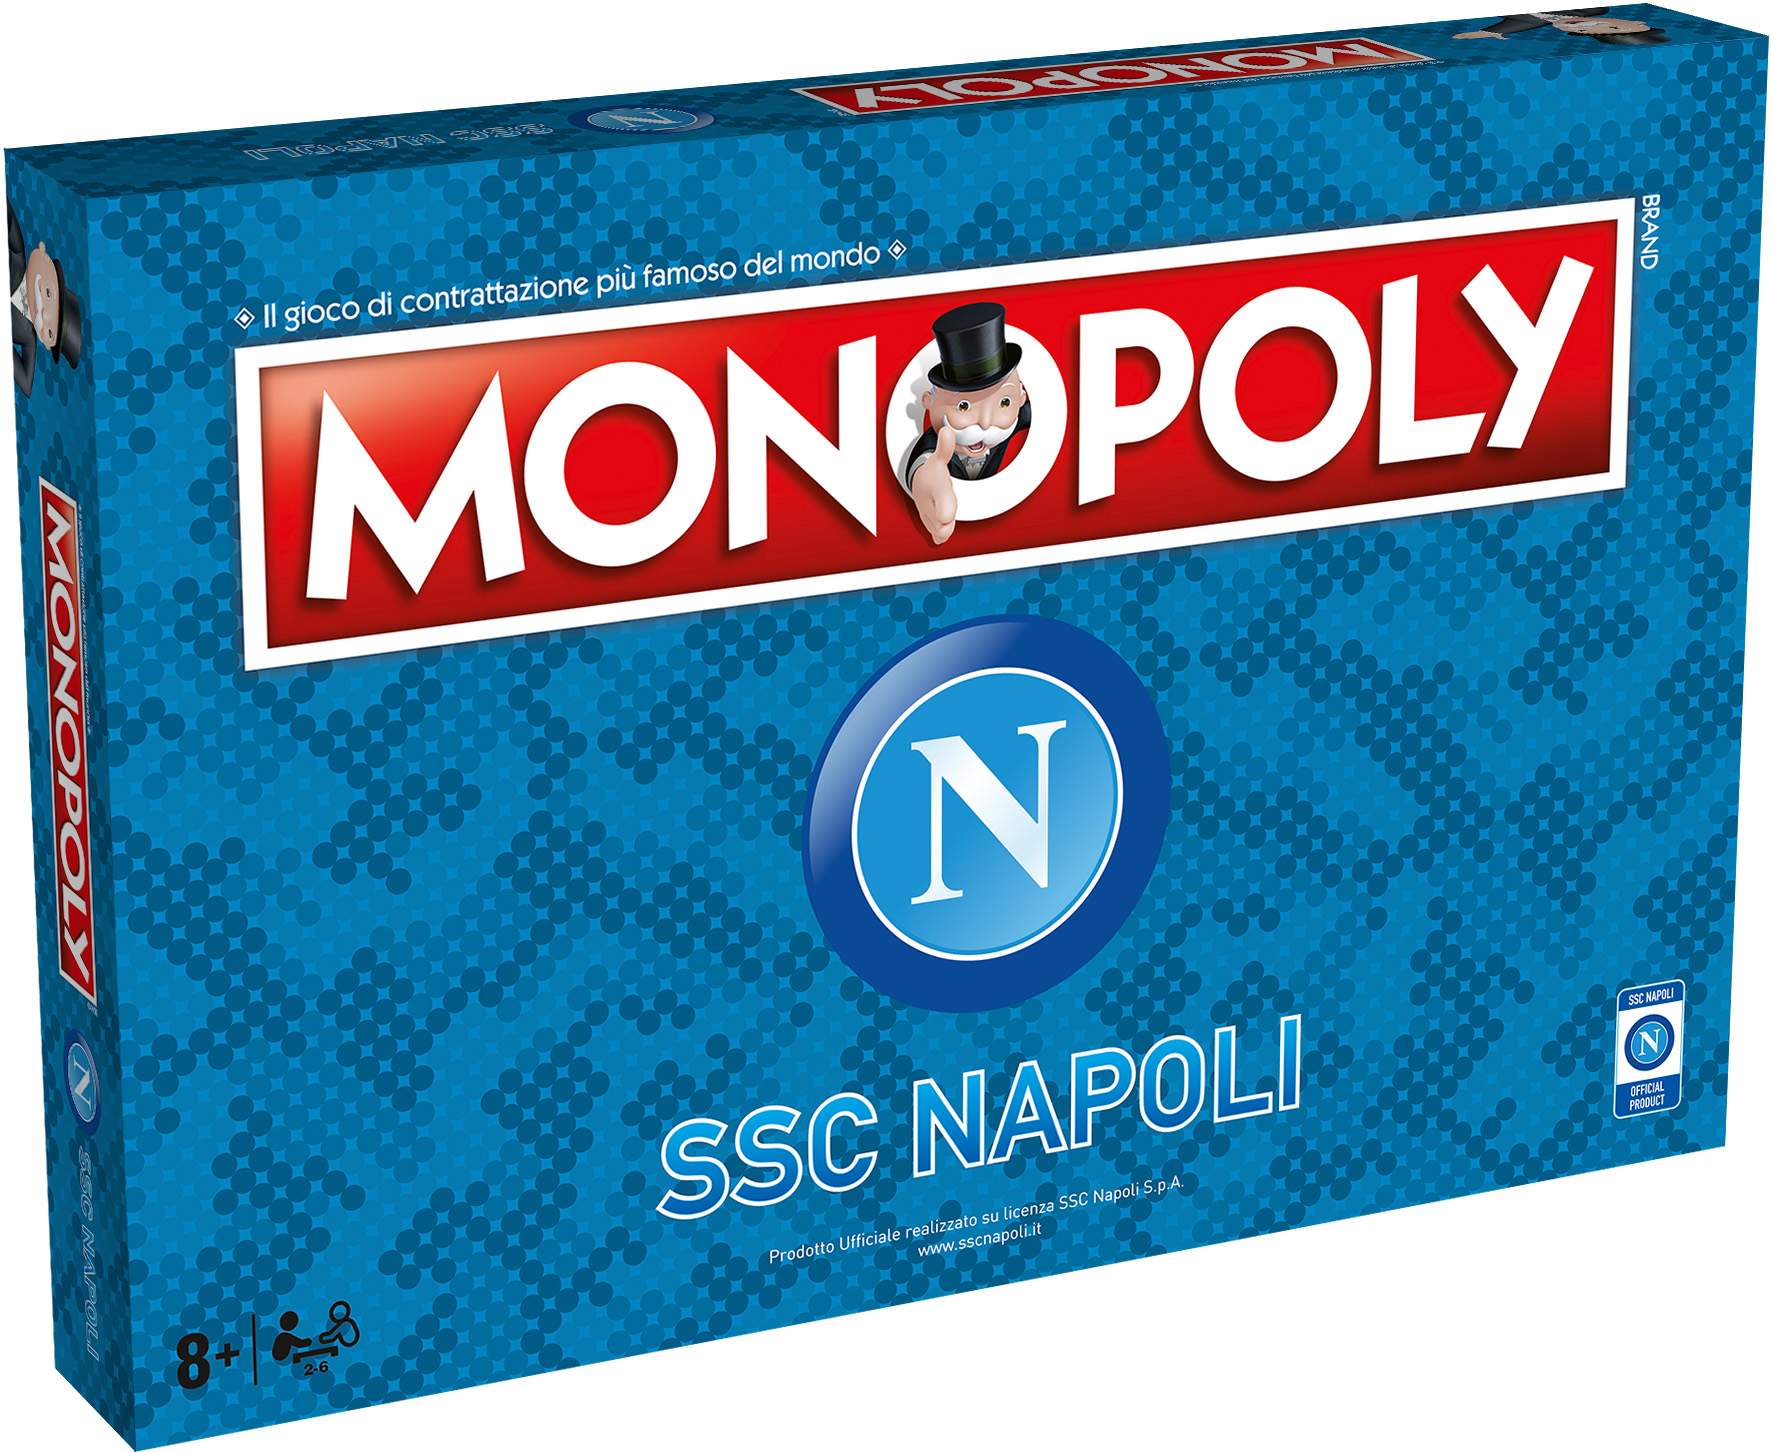 Monopoli Napoli, al posto degli alberghi si costruiscono stadi. Coppa, pallone e scarpetta come pedine